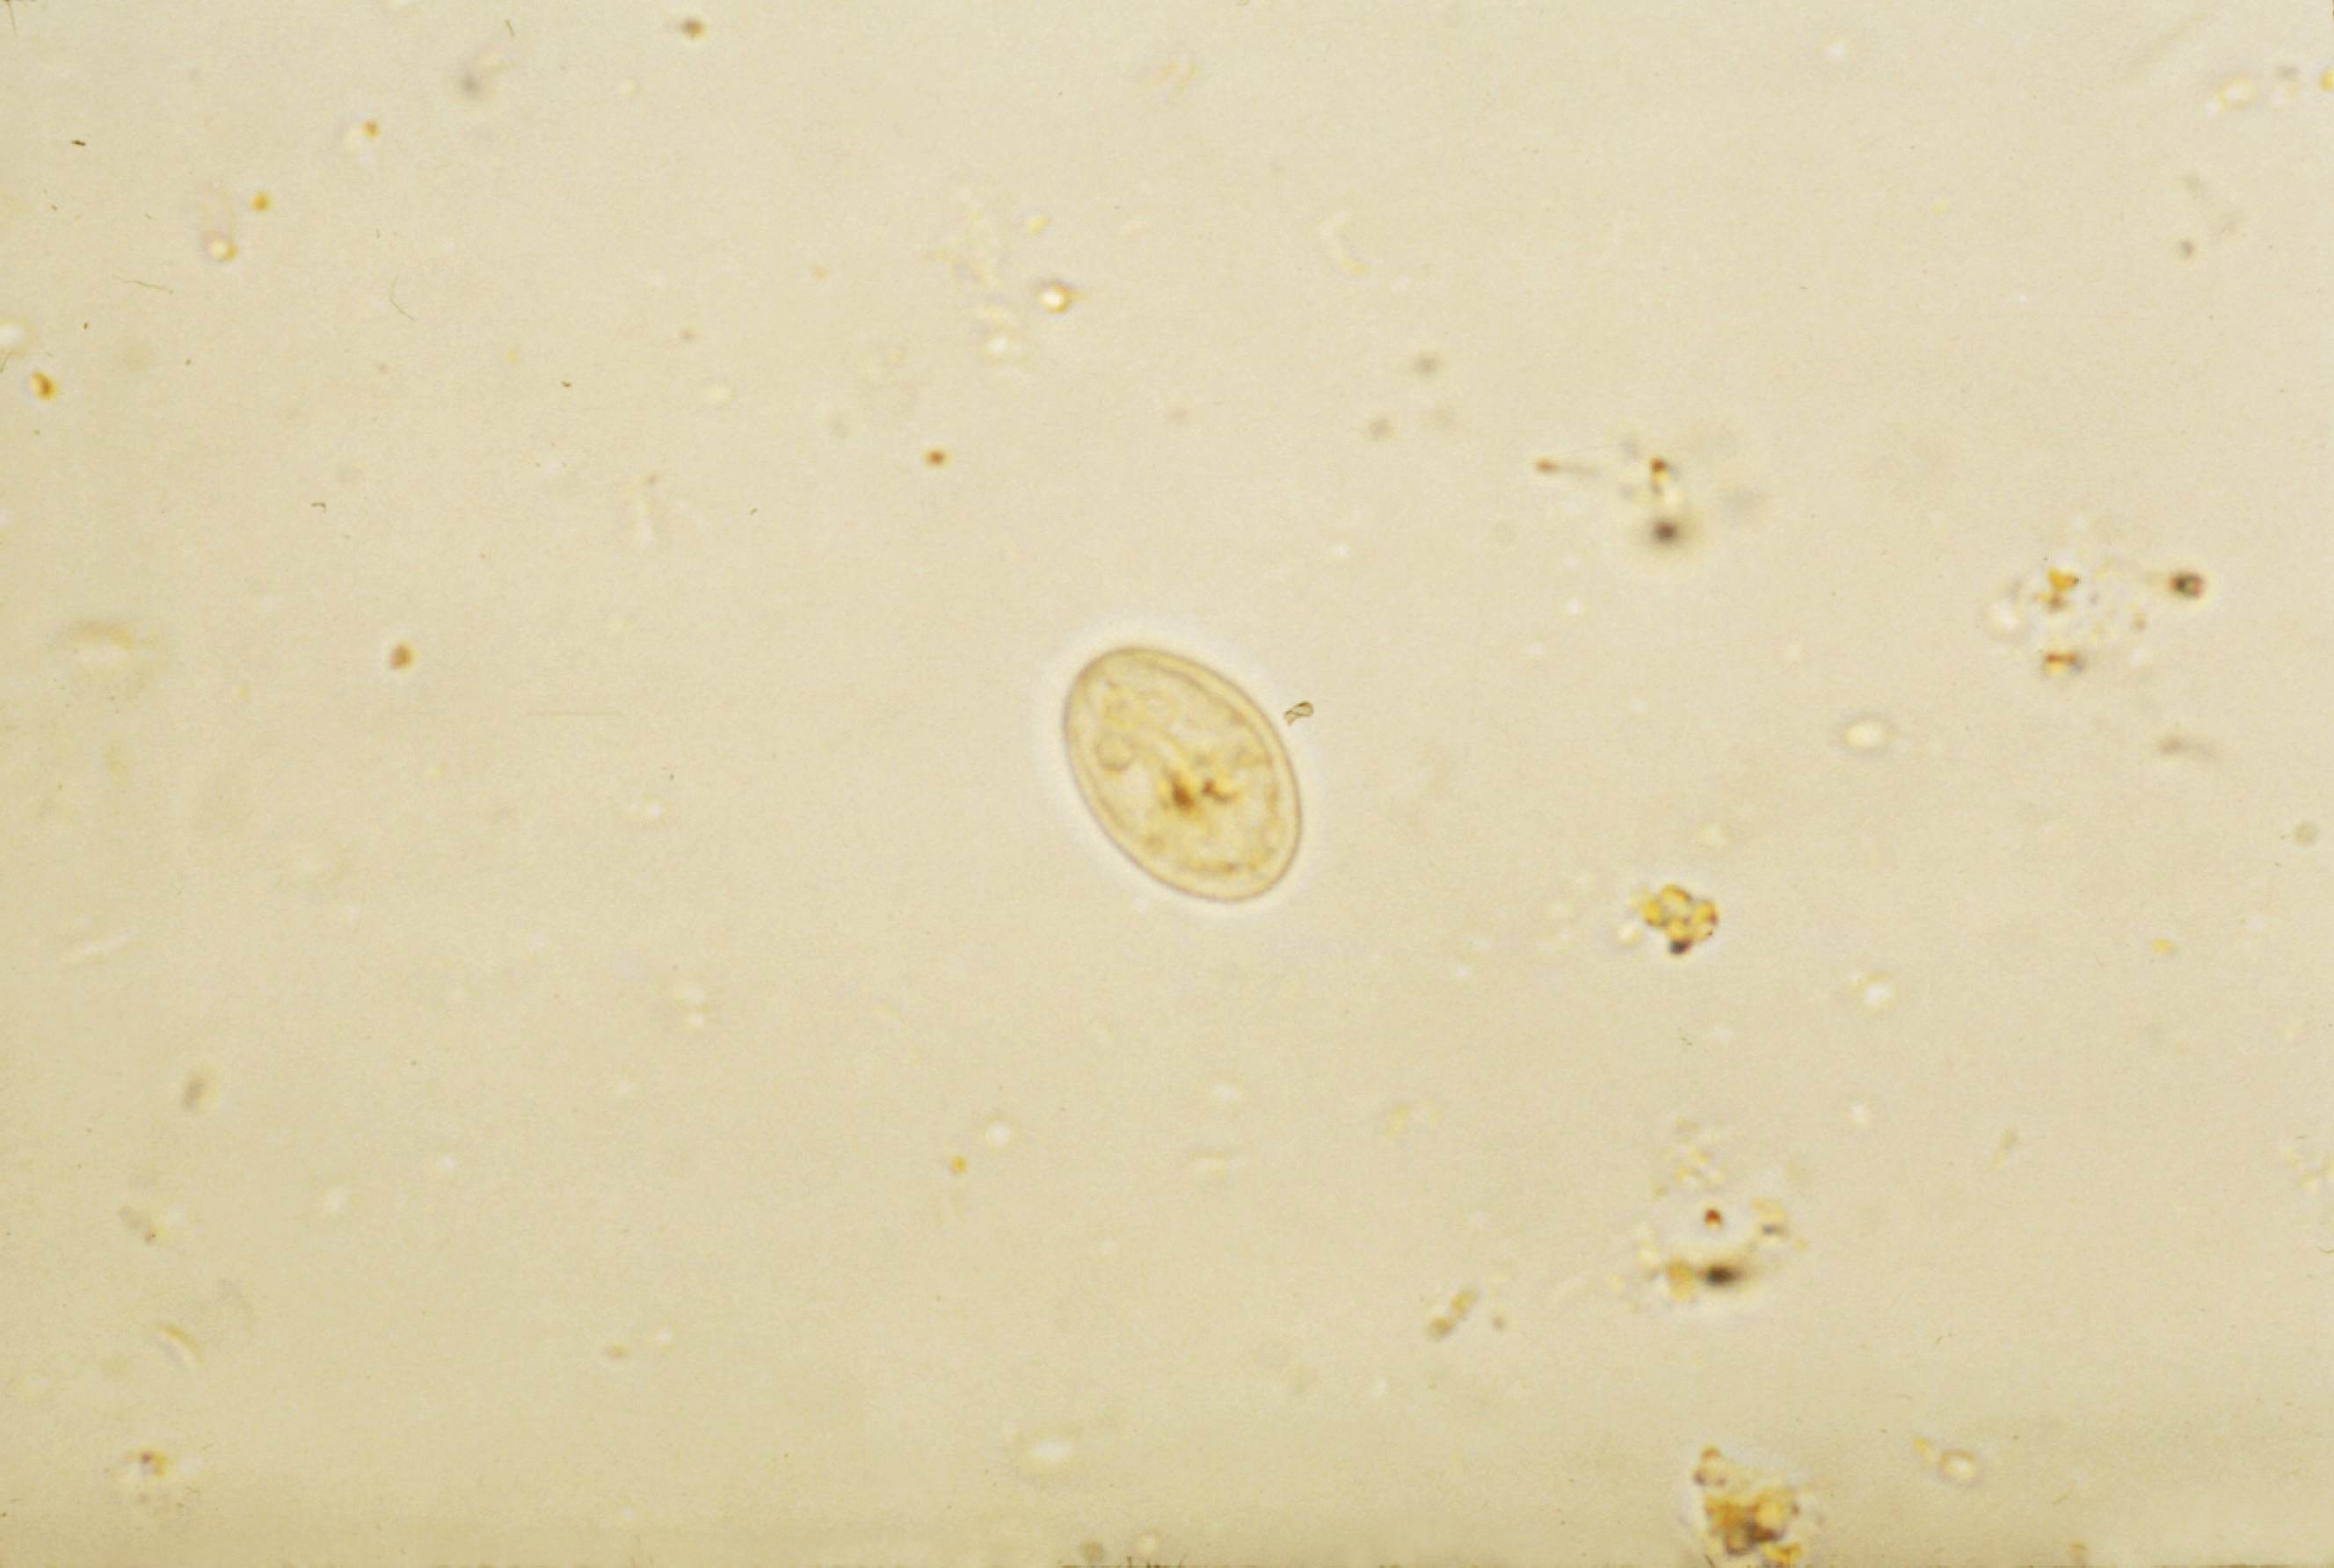 giardia intestinalis condylomata acuminata hpv 6 11